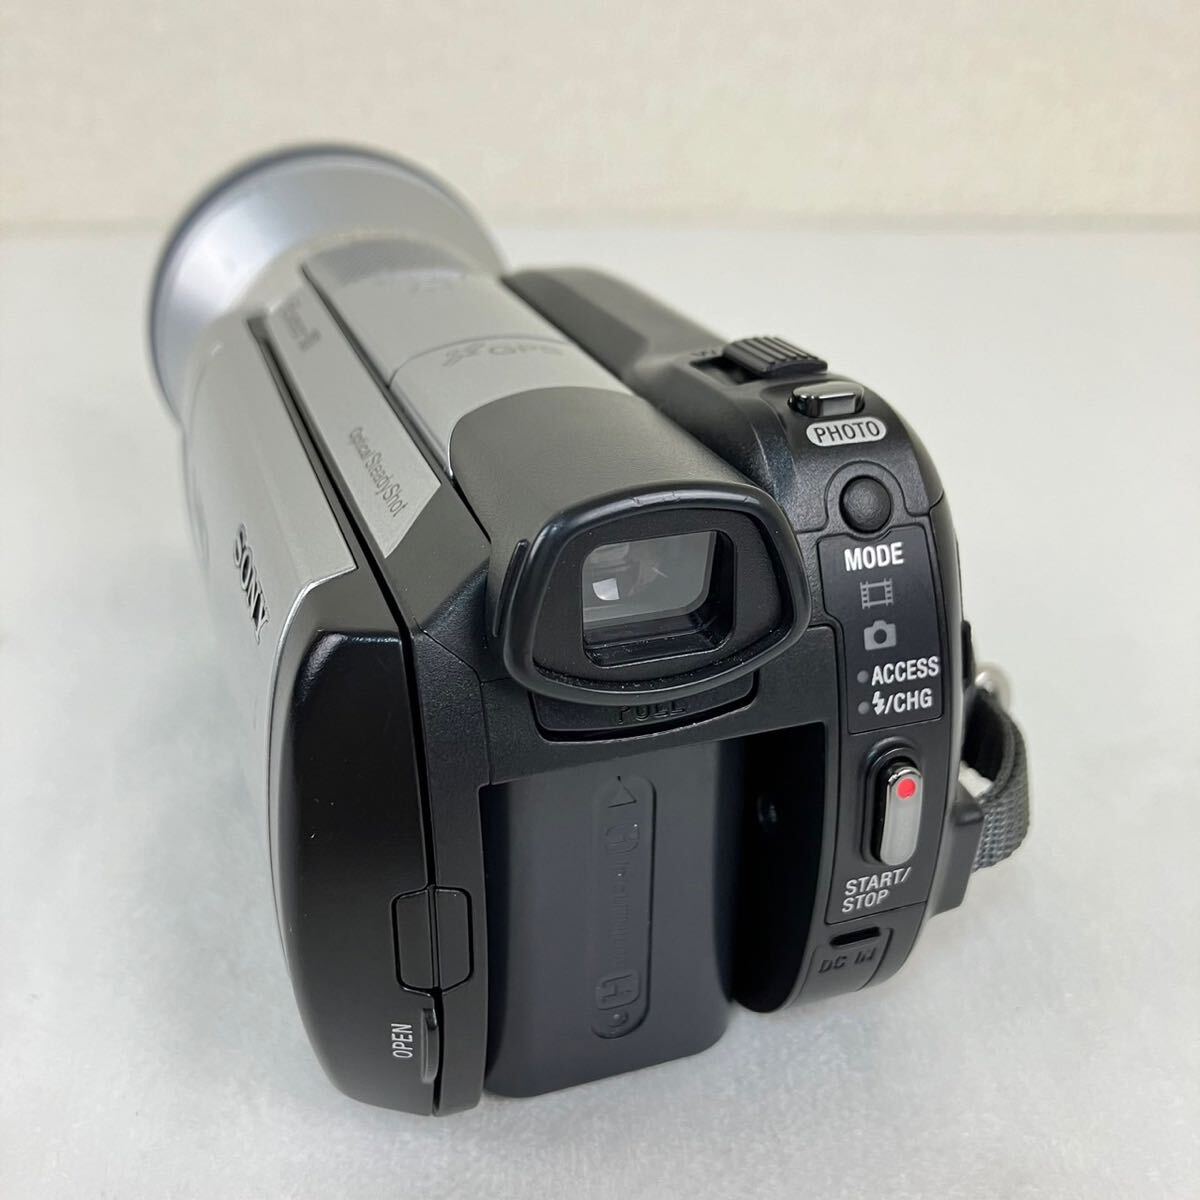 ソニー SONY ハンディカムHDR-XR500ビデオカメラ SONY WIDE CONVERSION LENS X0.7 VCL-HG0737Xの画像3